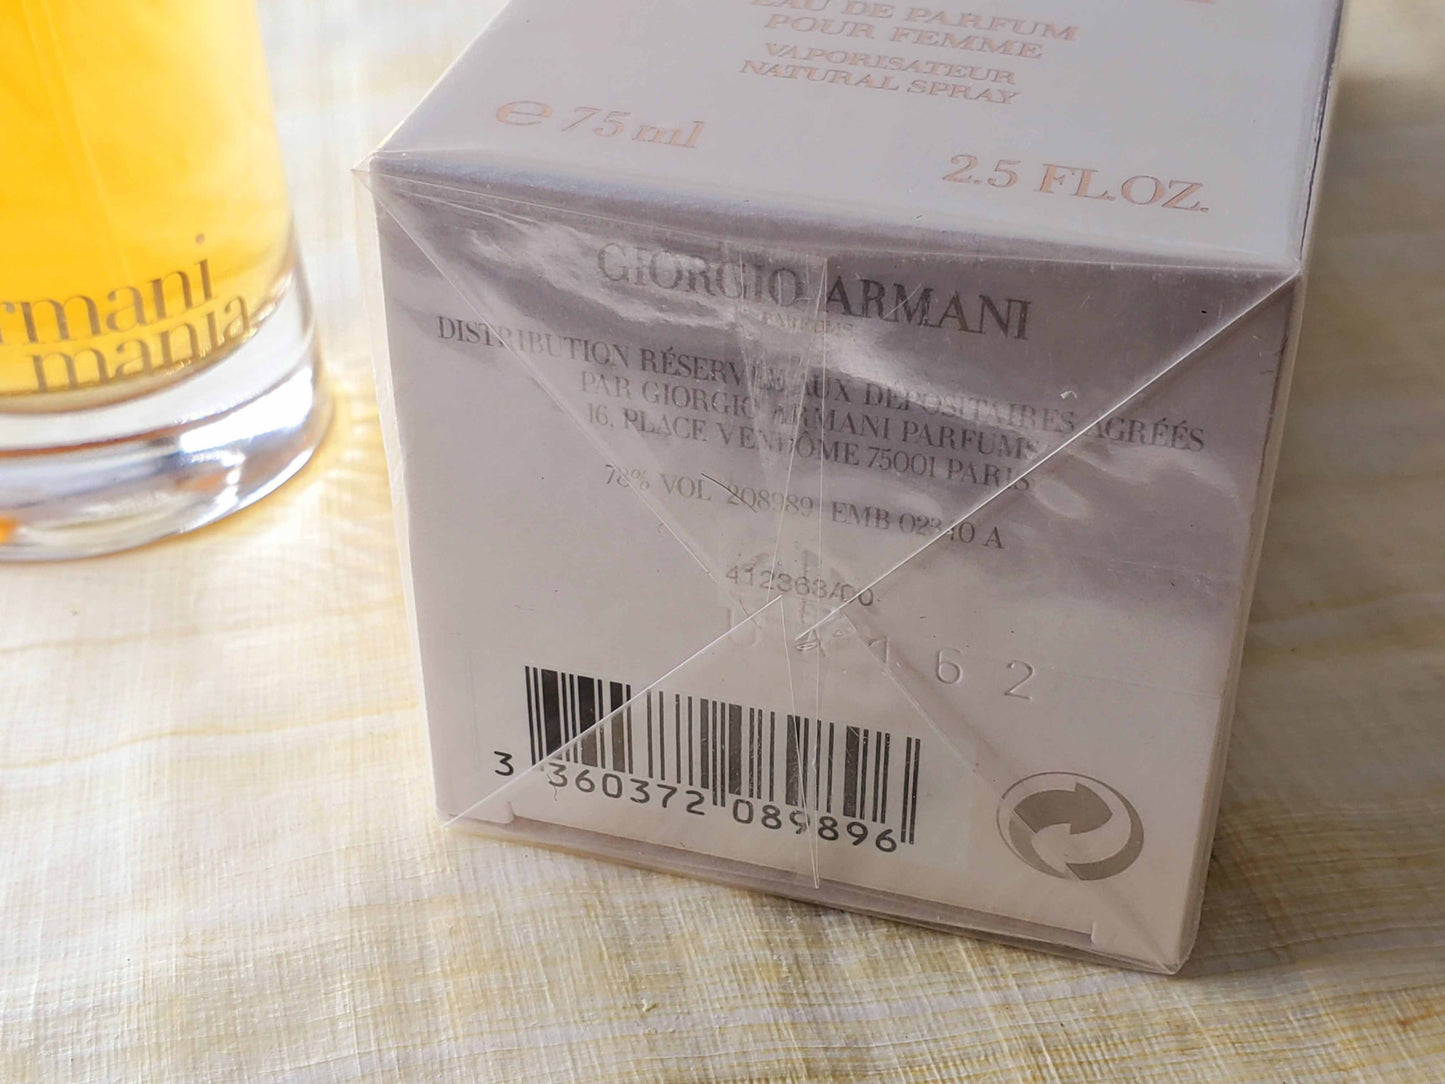 Armani Mania Giorgio Armani for women EDP Spray 75 ml 2.5 oz Or 50 ml 1.7 oz, Vintage, Rare, Sealed